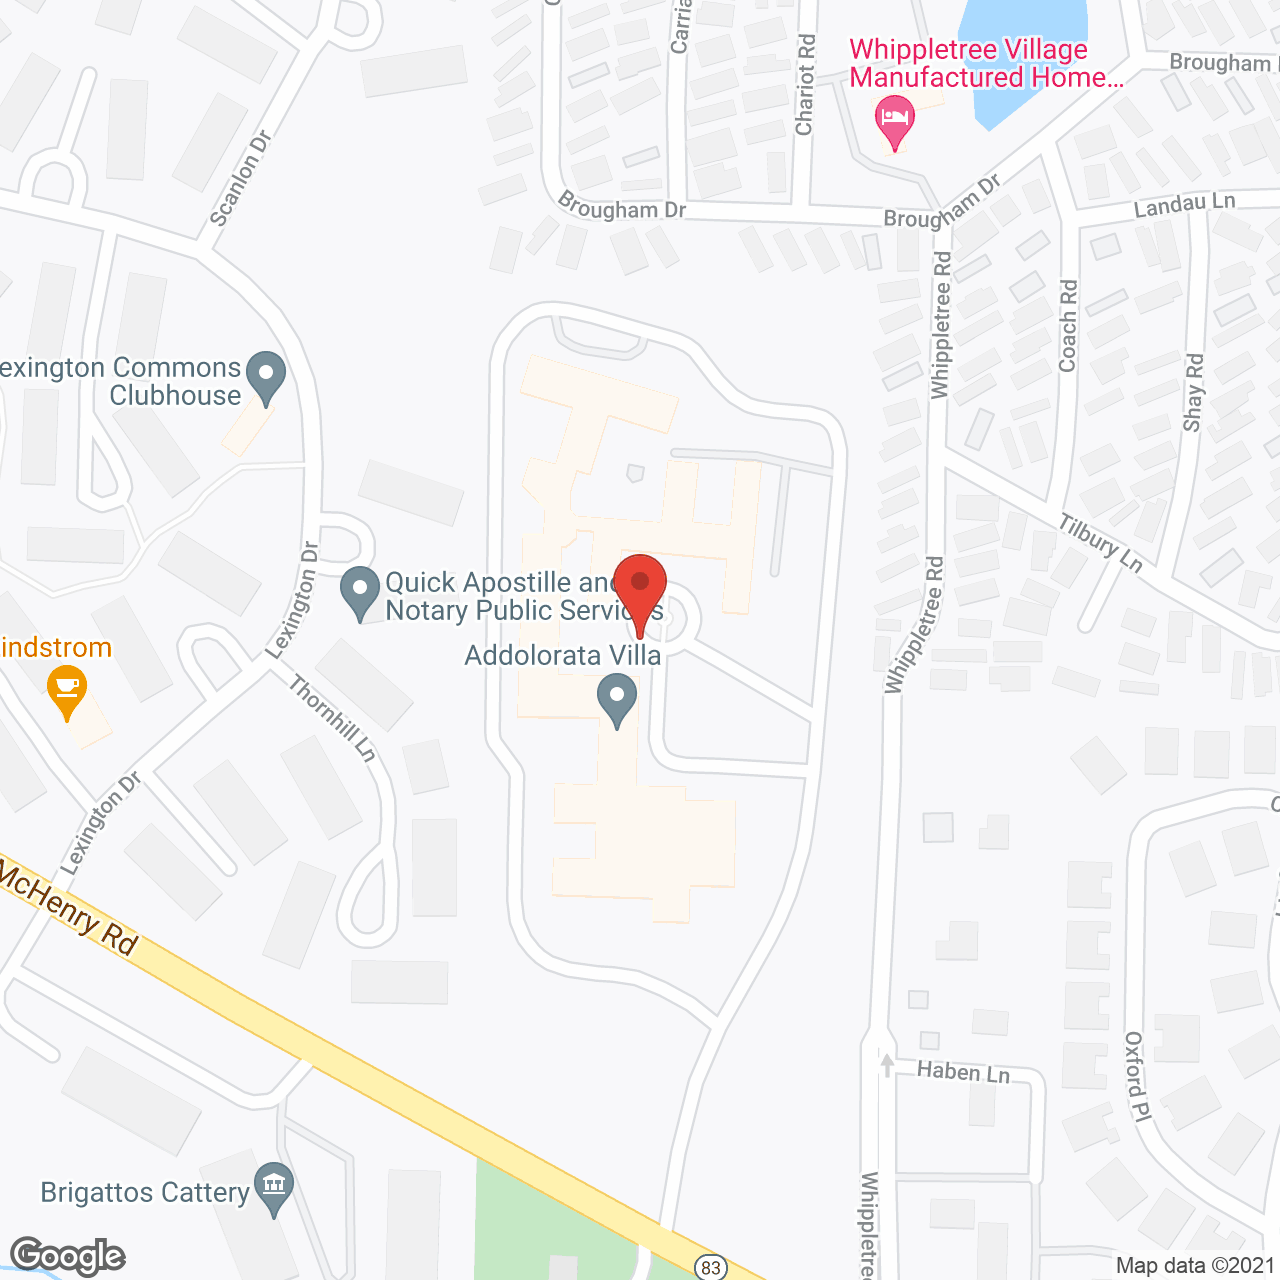 Addolorata Villa in google map